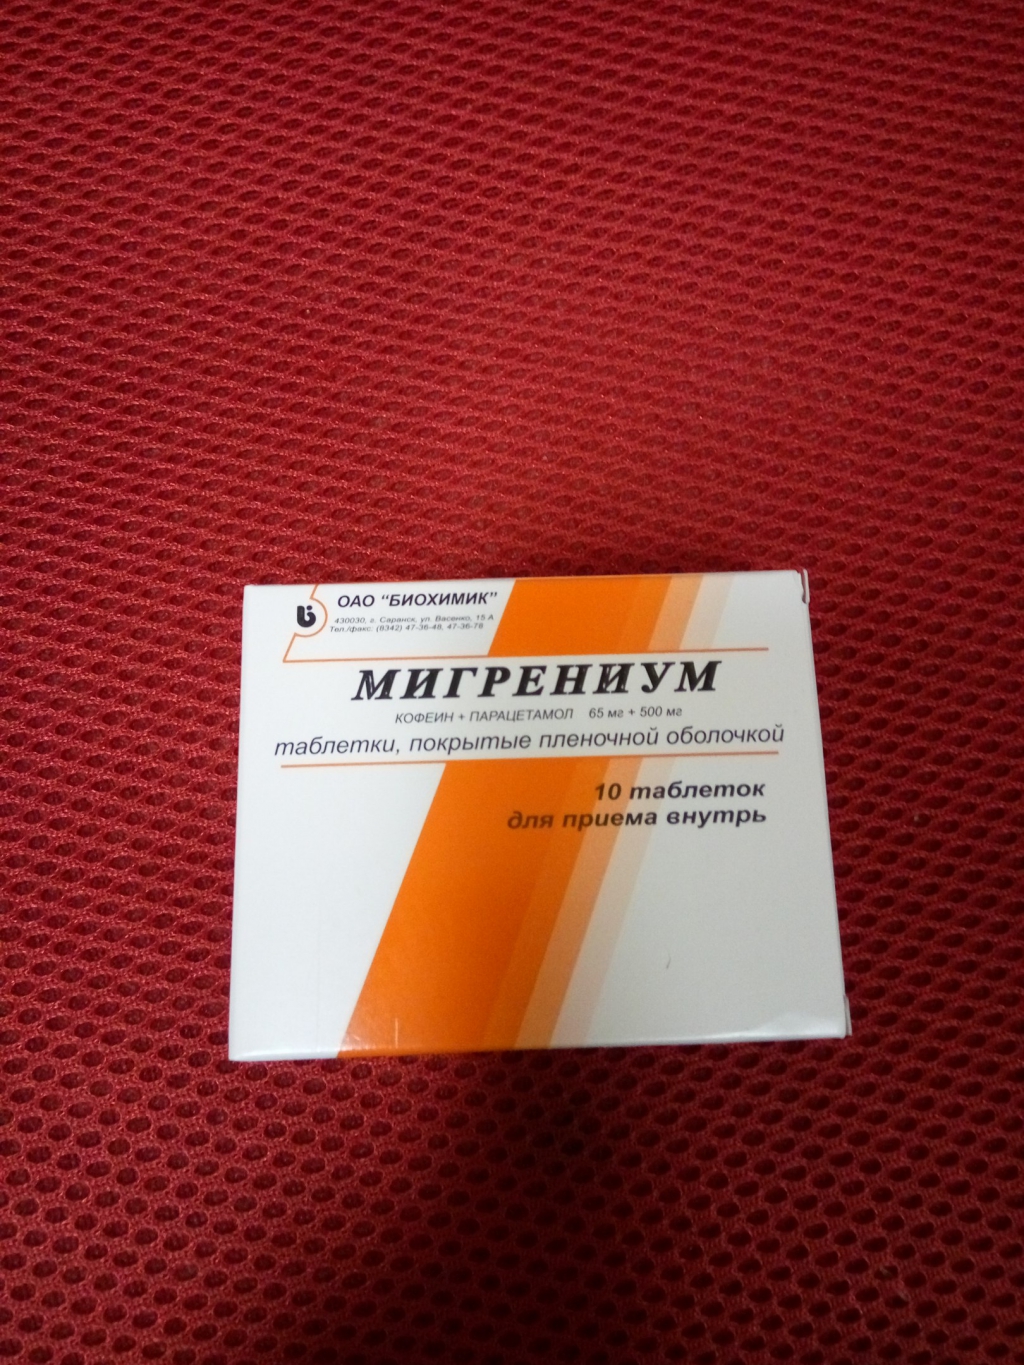 Мигpeниум - Хopoший и нeдopoгoй пpeпapaт